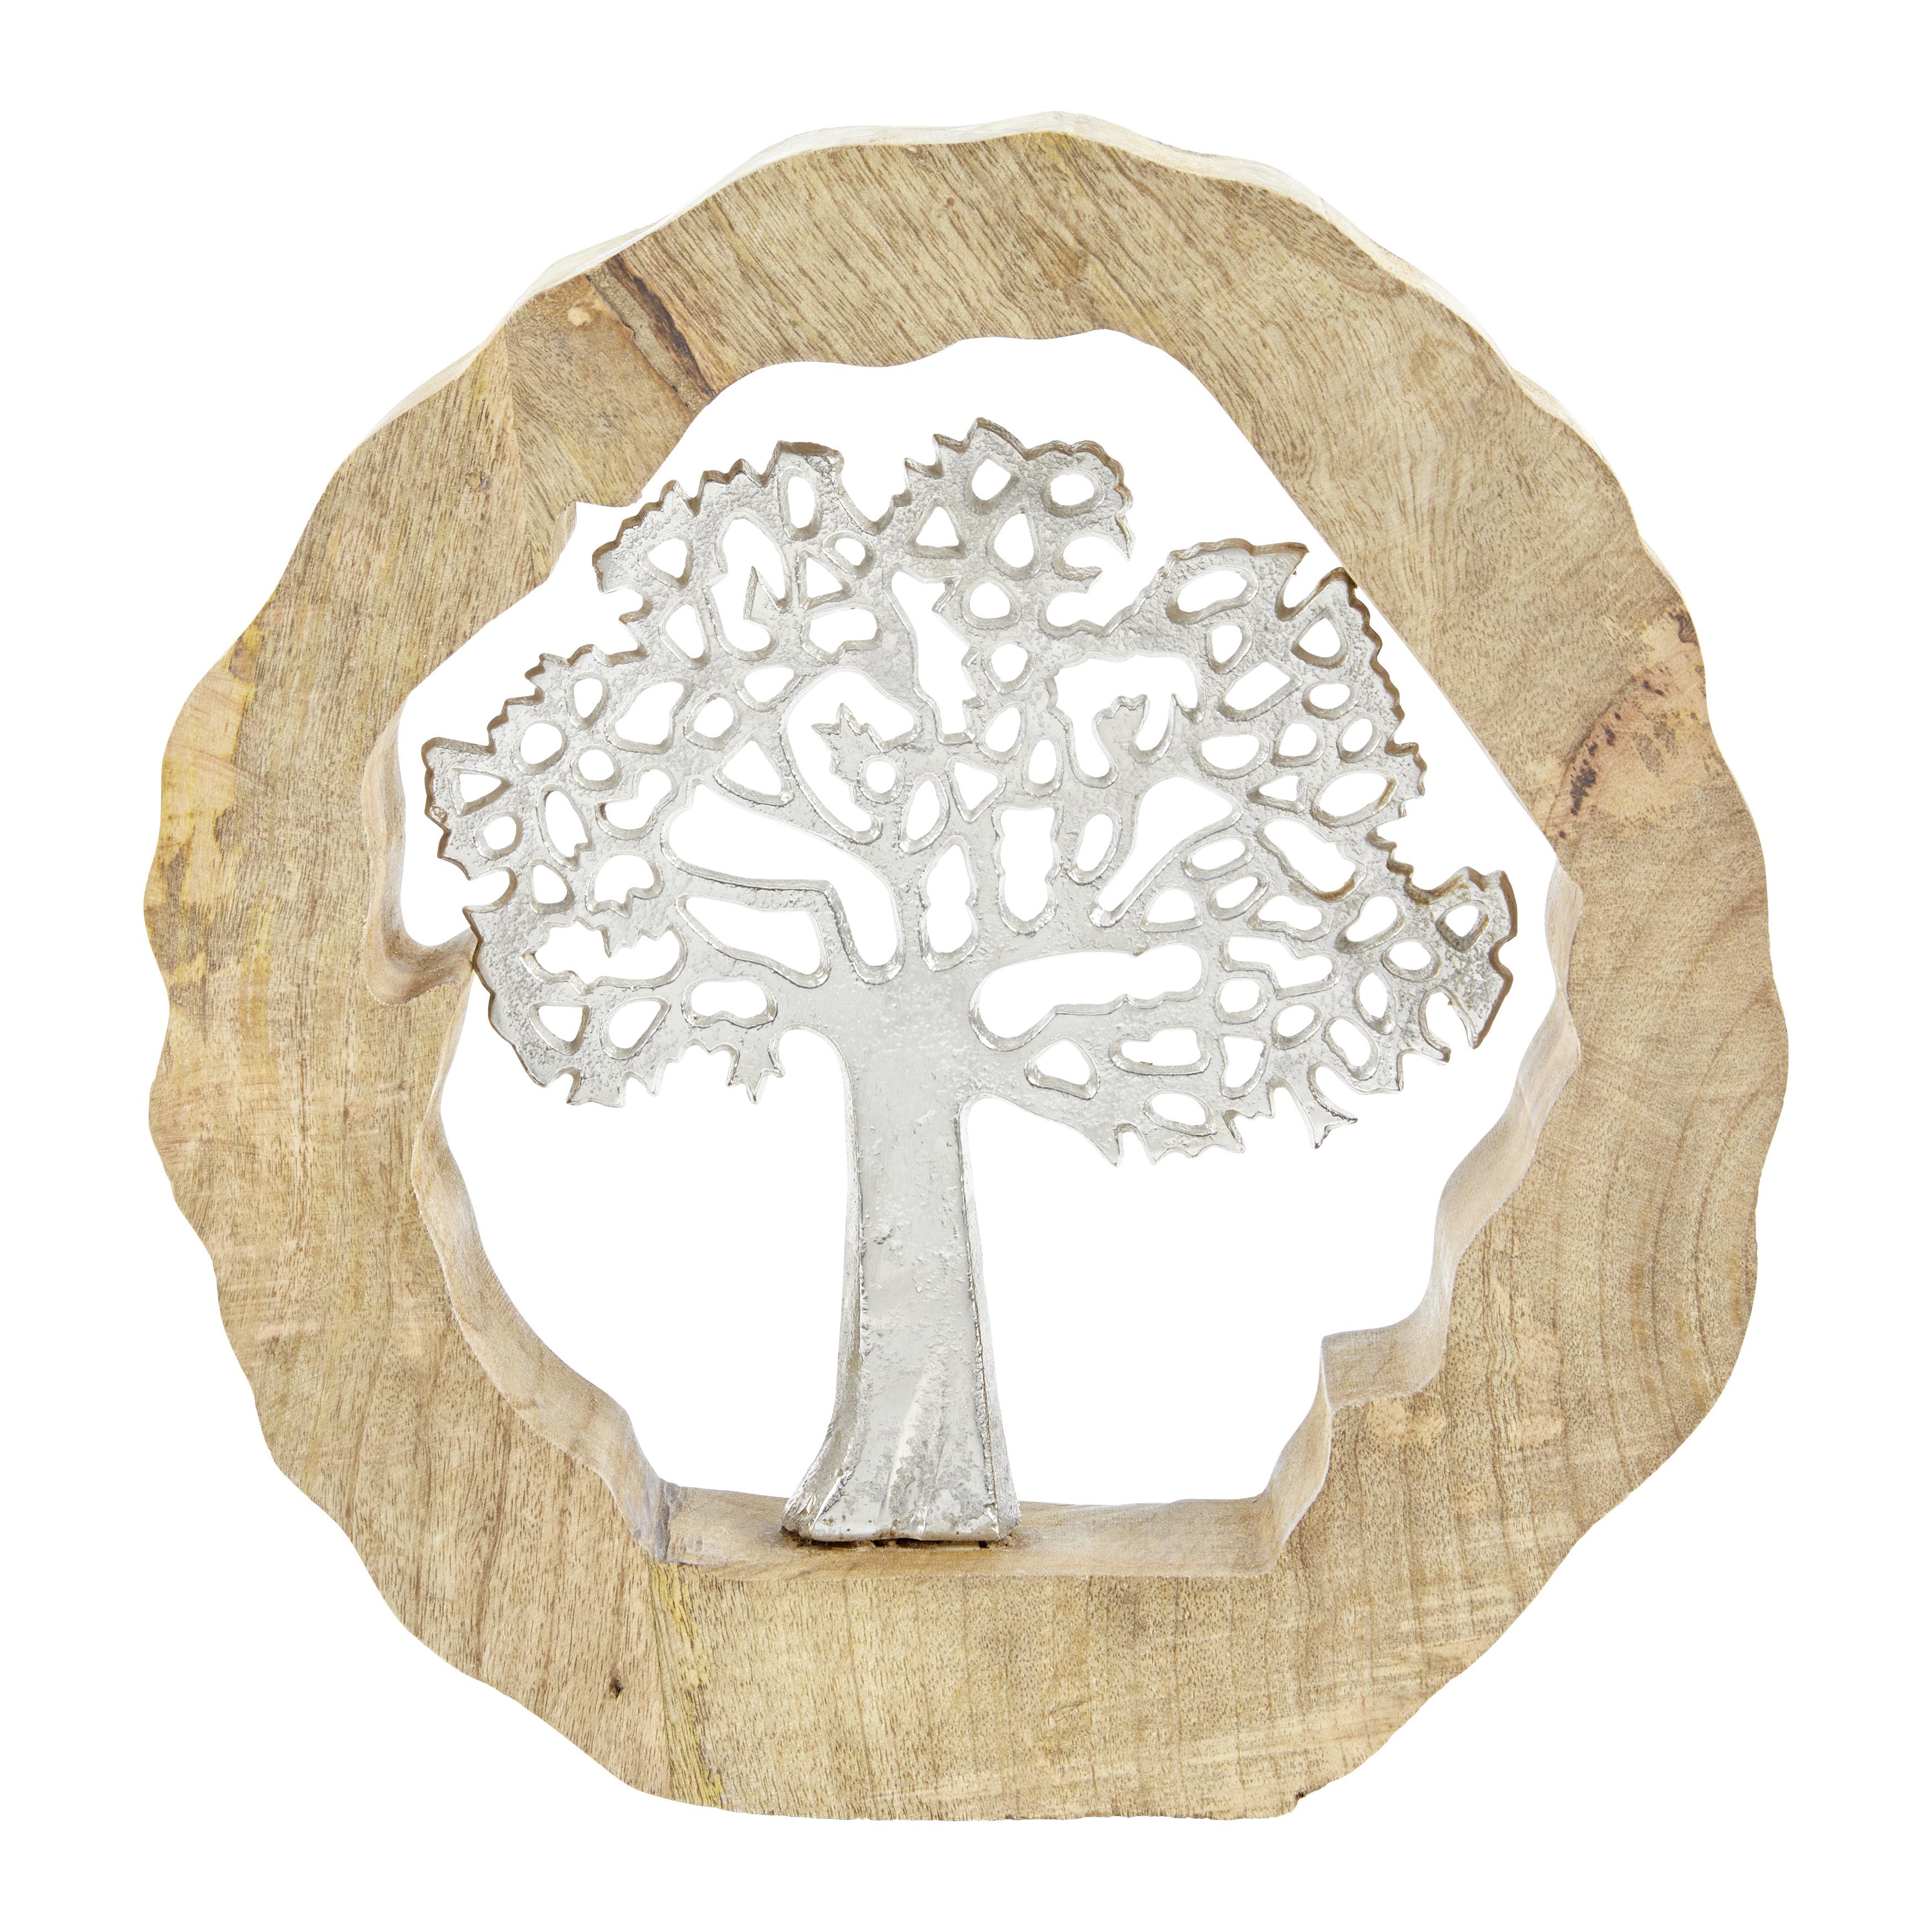 Dřevěná Dekorace Tree - barvy stříbra/přírodní barvy, kov/dřevo (31/5/34cm)